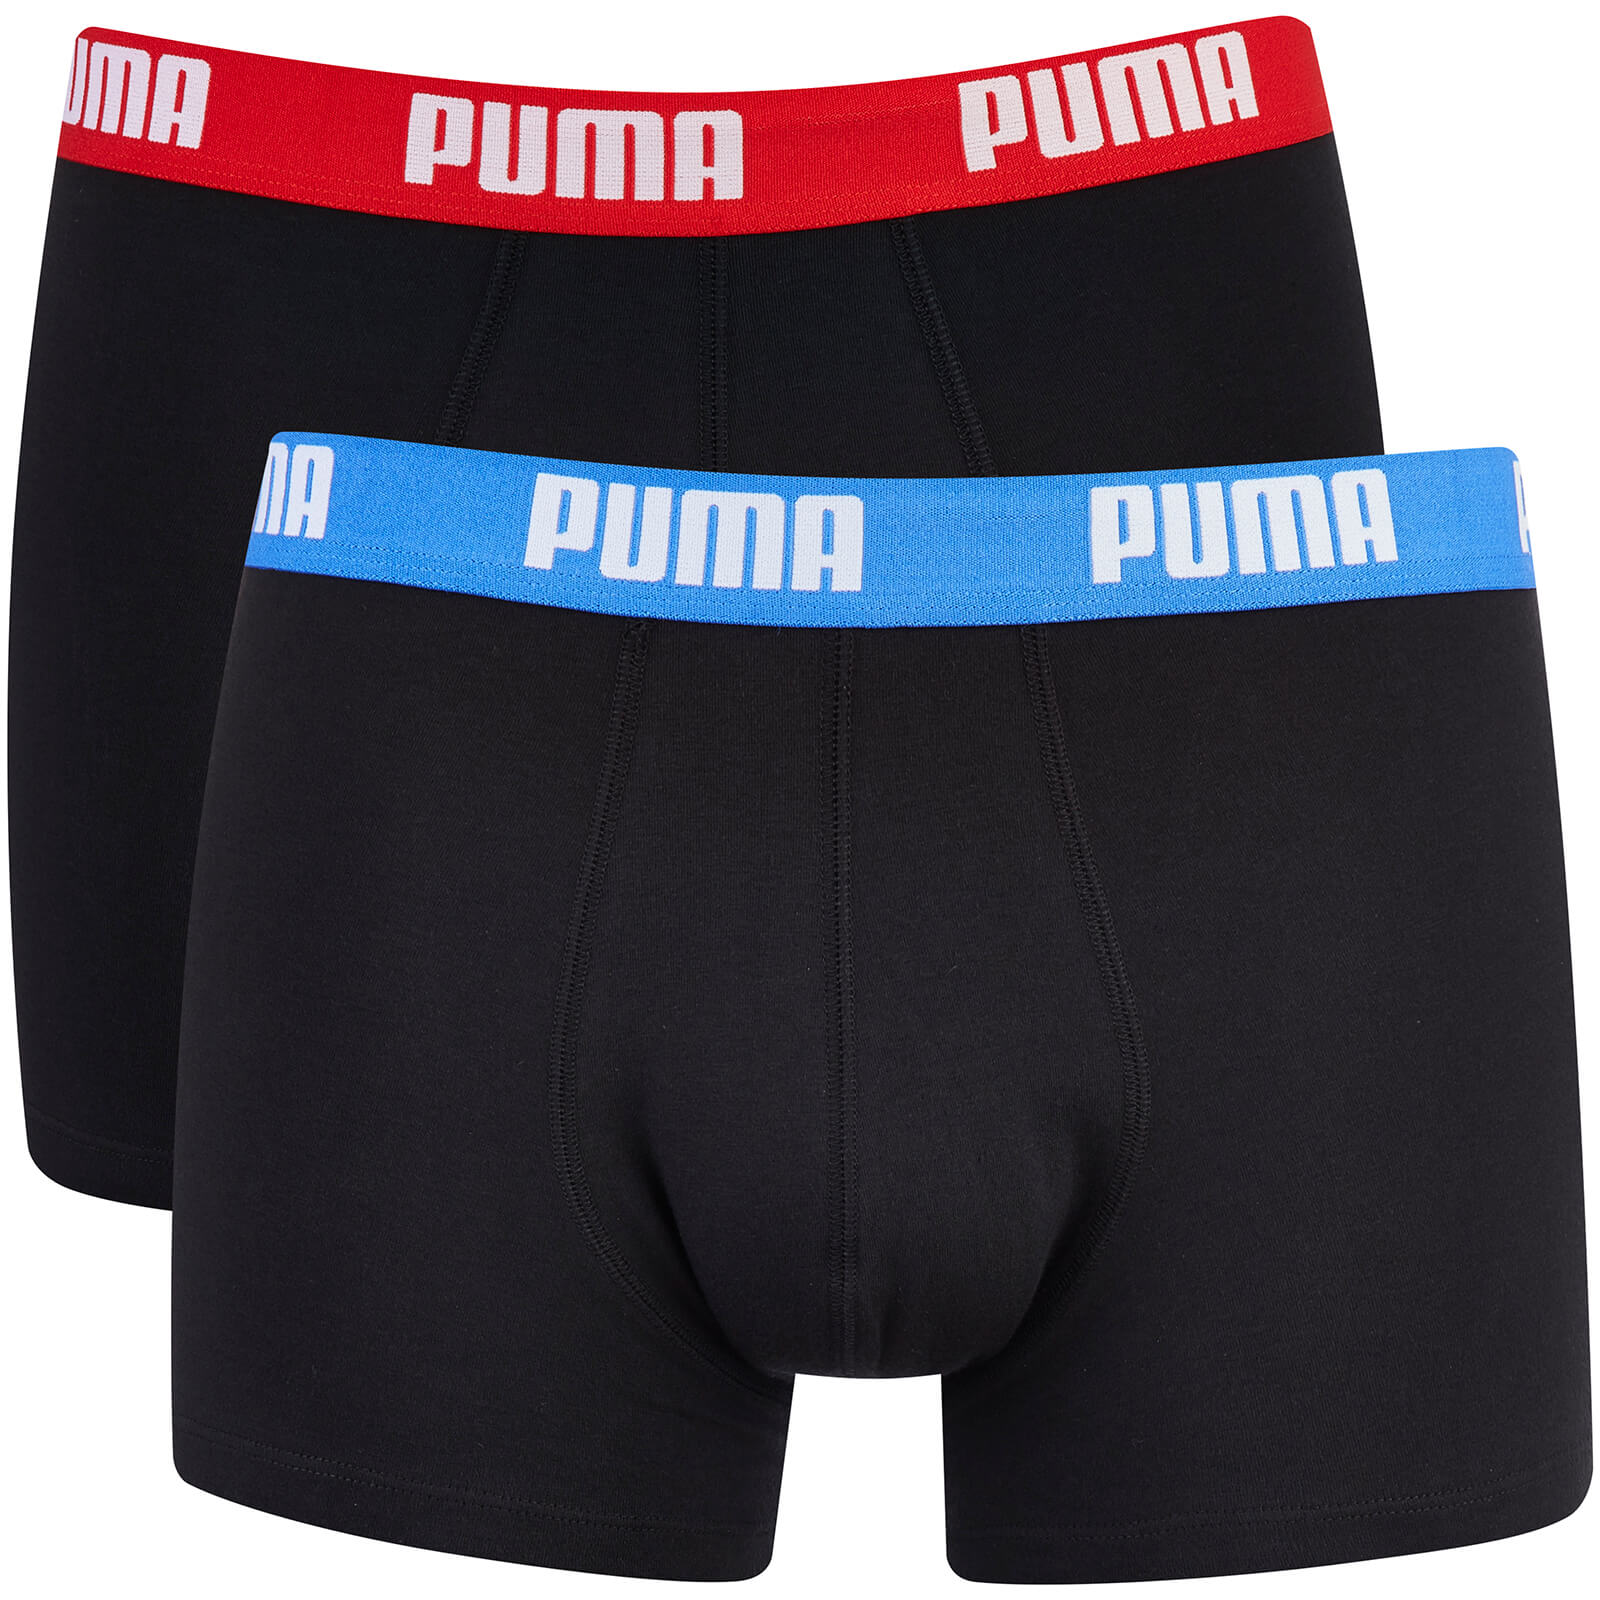 puma underwear price in pakistan